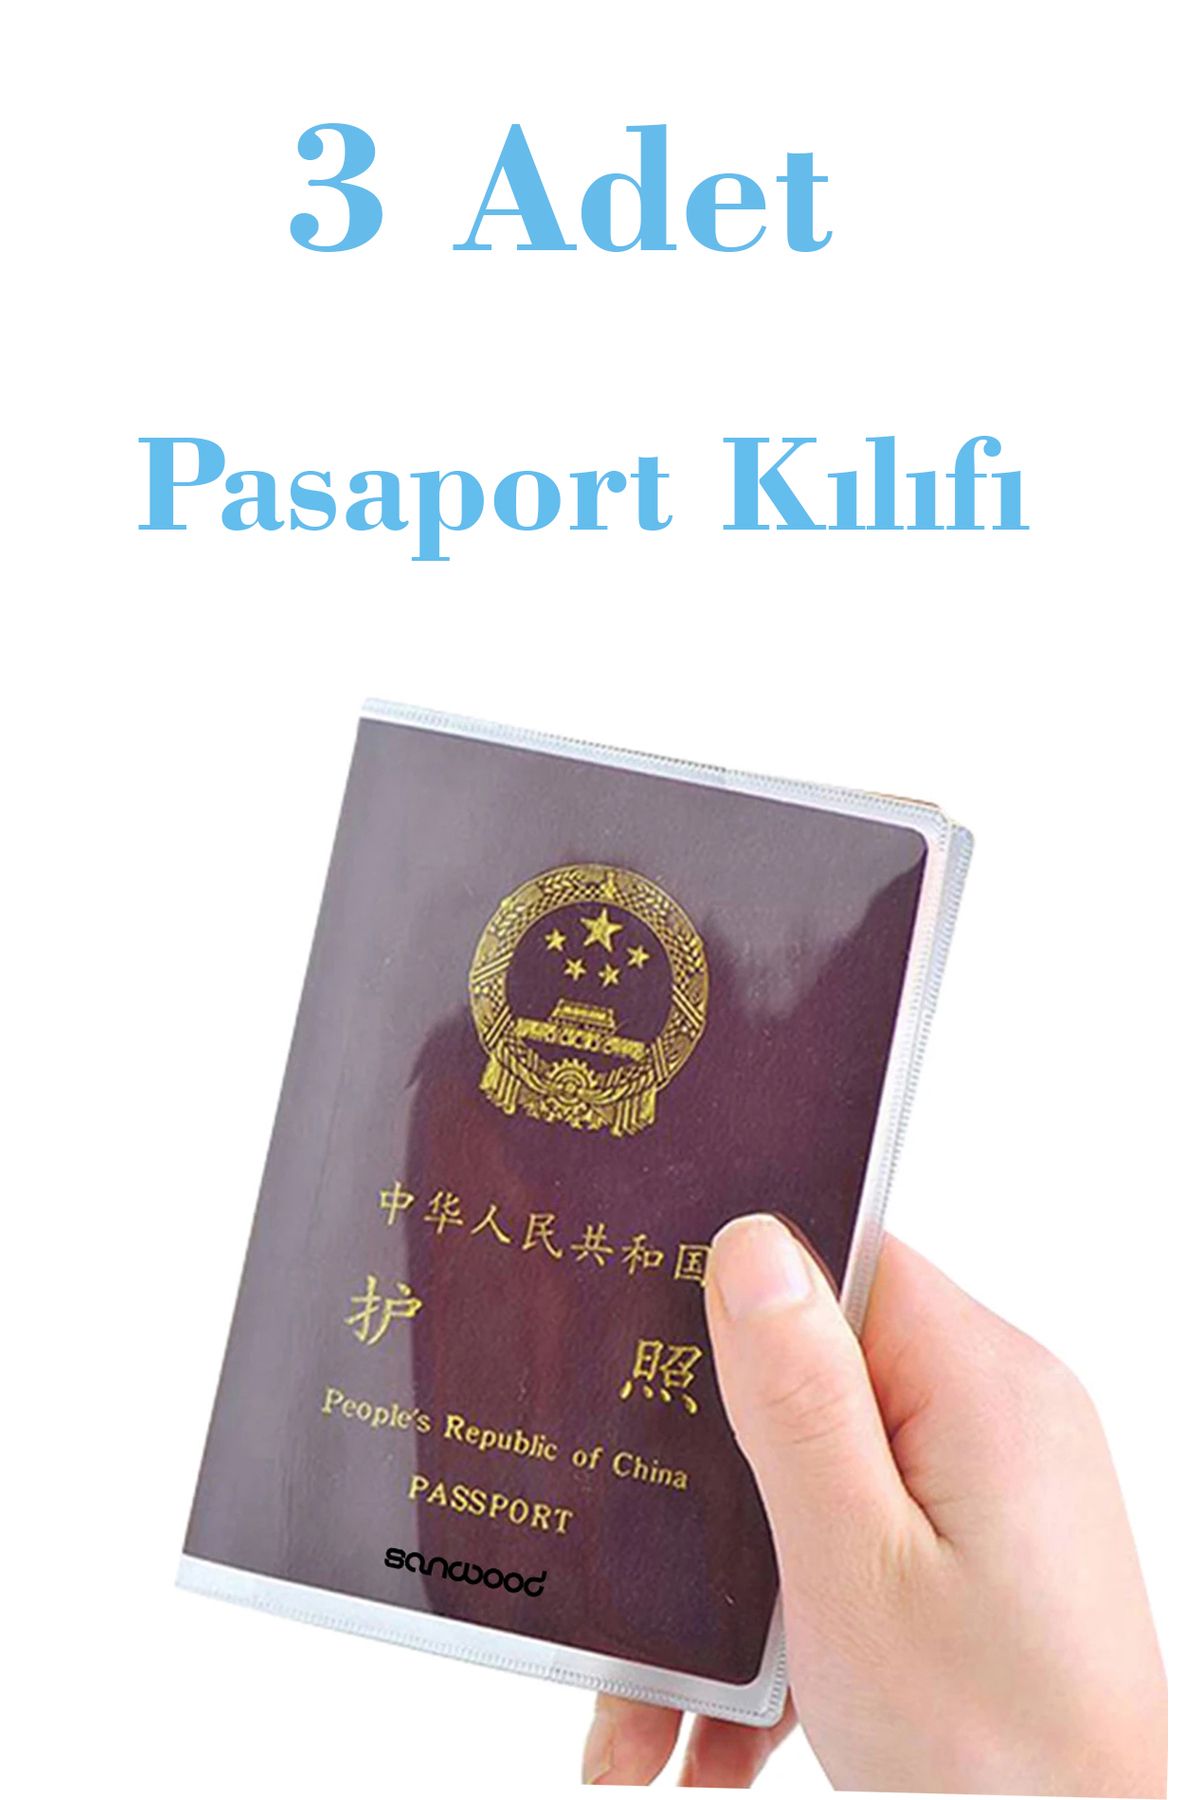 İPAX 3 Adet Şeffaf Pasaport Kılıfı Pasaport Koruma Kabı Pasaport Cüzdanı Pasaportluk Her Pasaporta Uygun